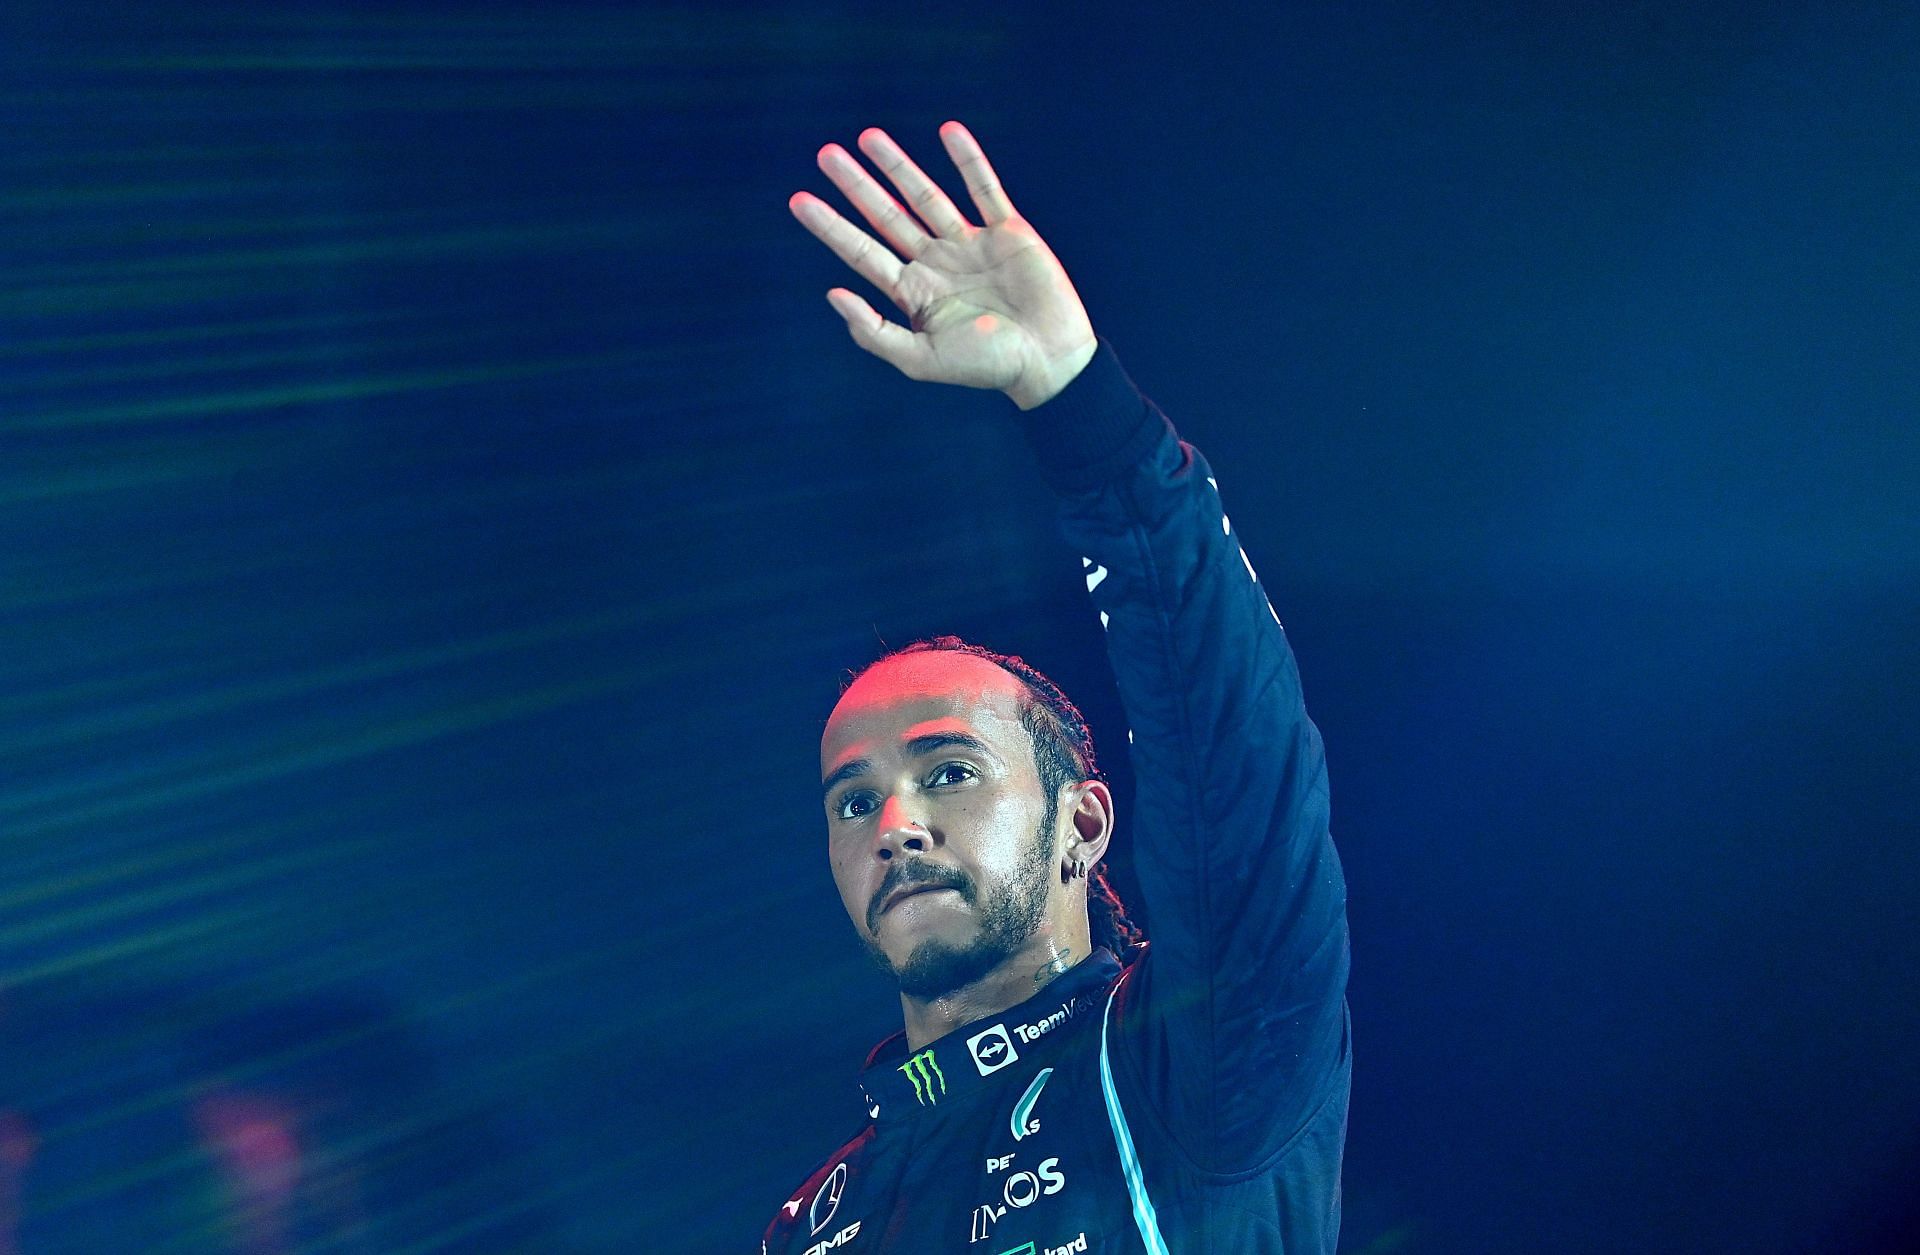 Lewis Hamilton walked away with the win in the Saudi Arabian GP last season